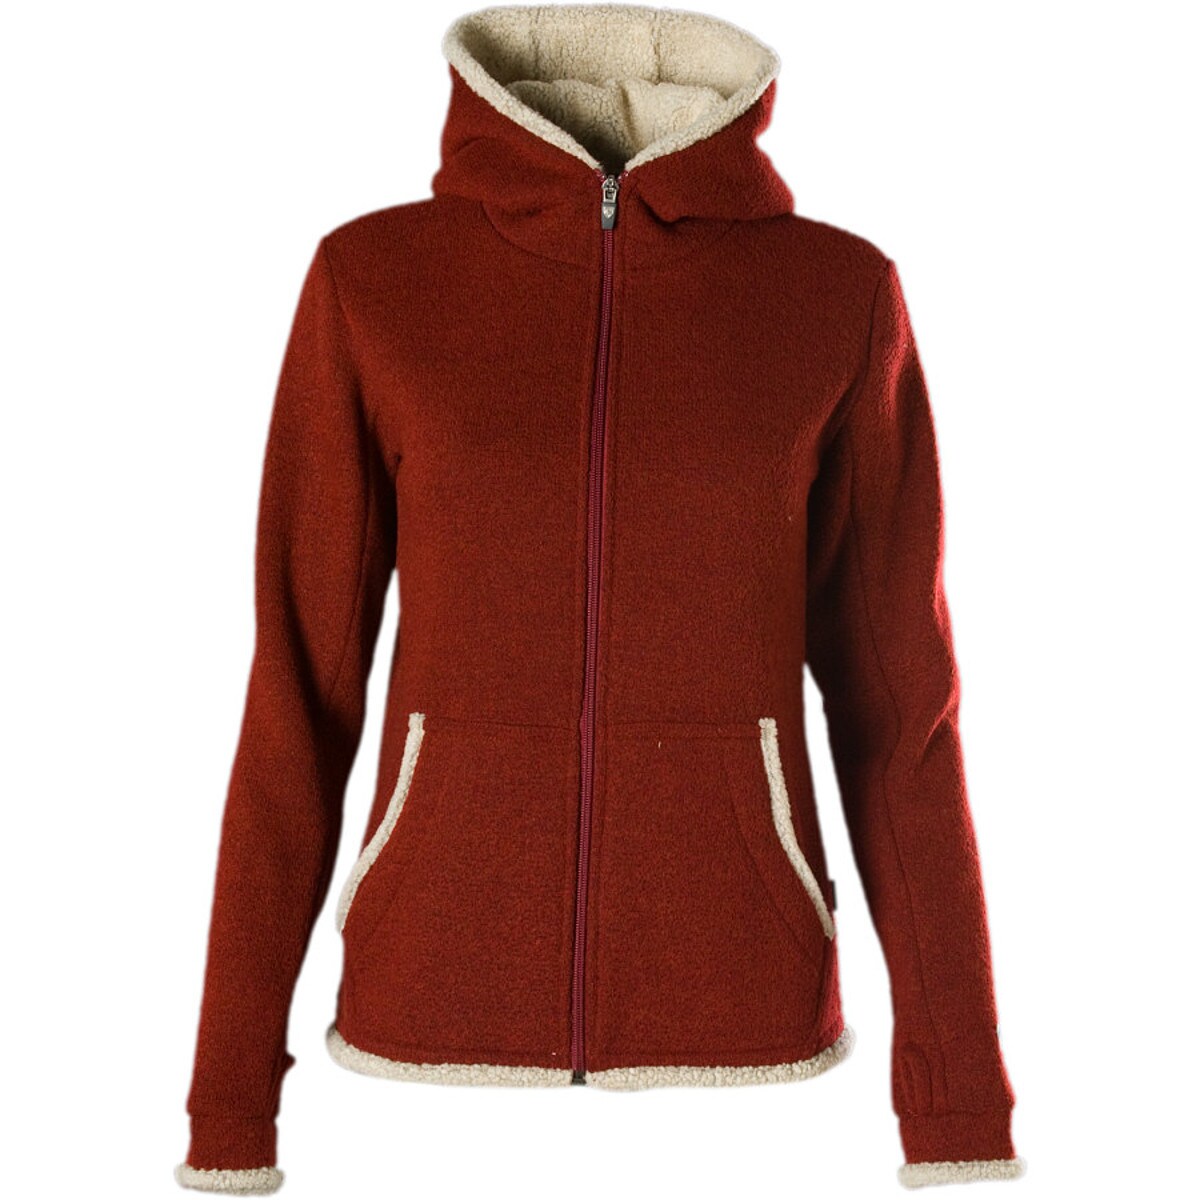 AKHG Women's Kindler Pile Fleece Full Zip Jacket